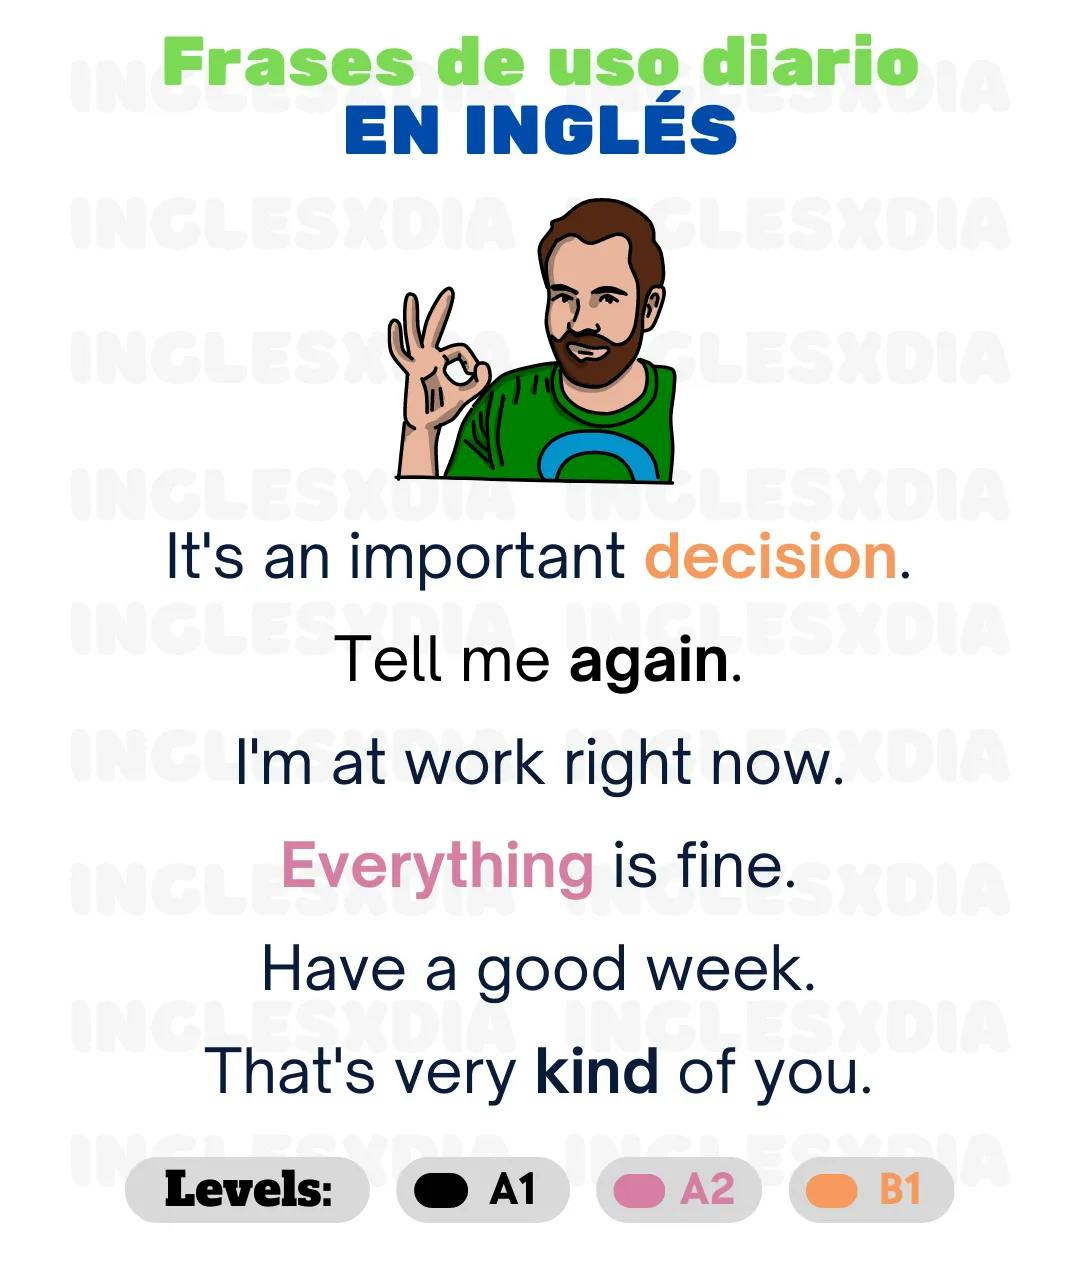 Curso de inglés en línea: frases en inglés de uso diario · Tell me again, everything...